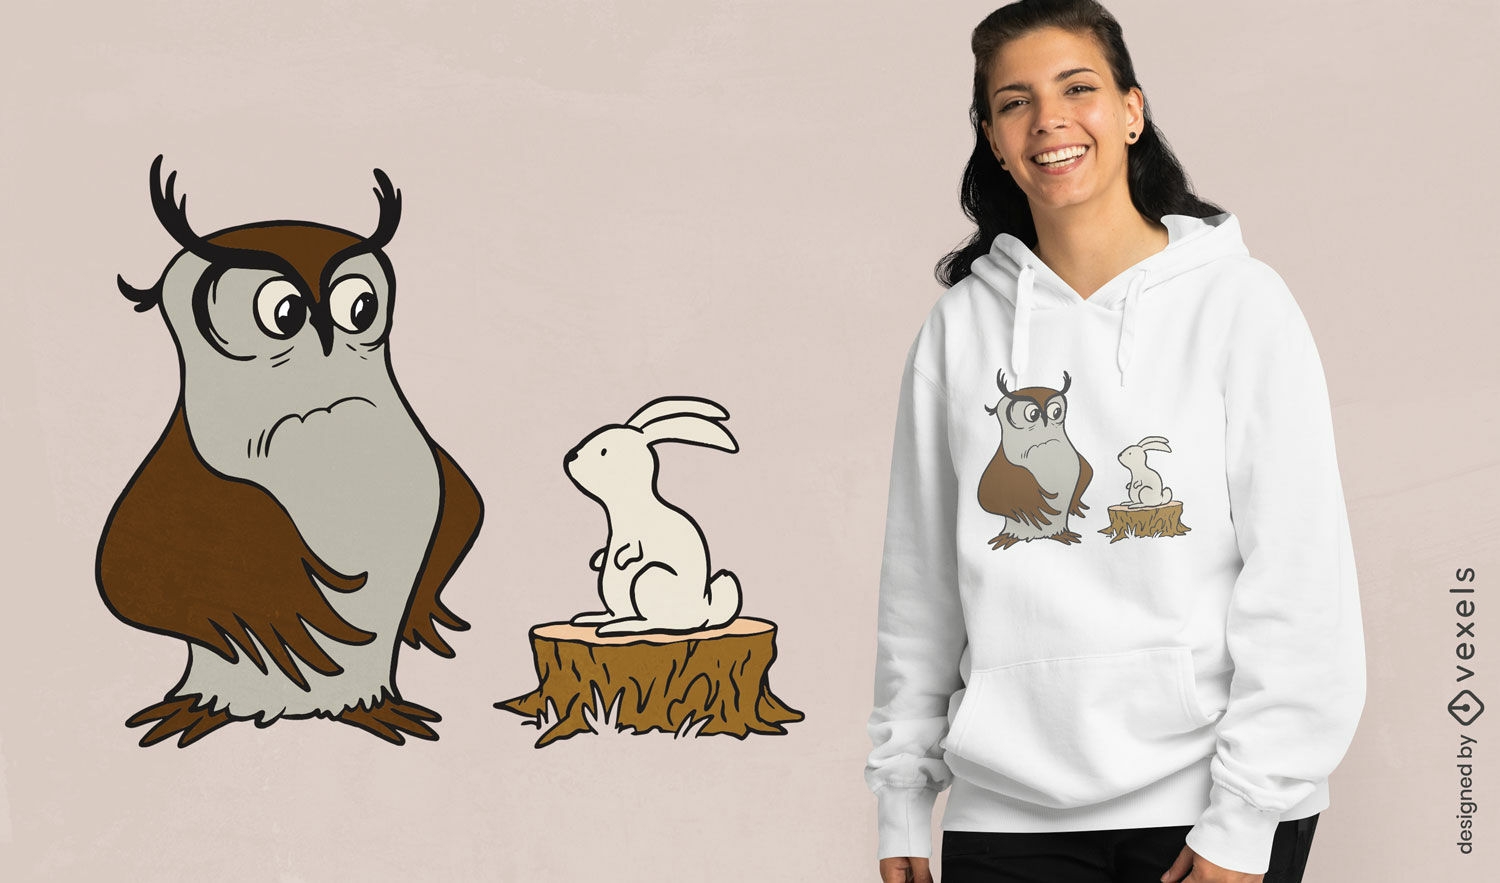 Owl and rabbit t-shirt design